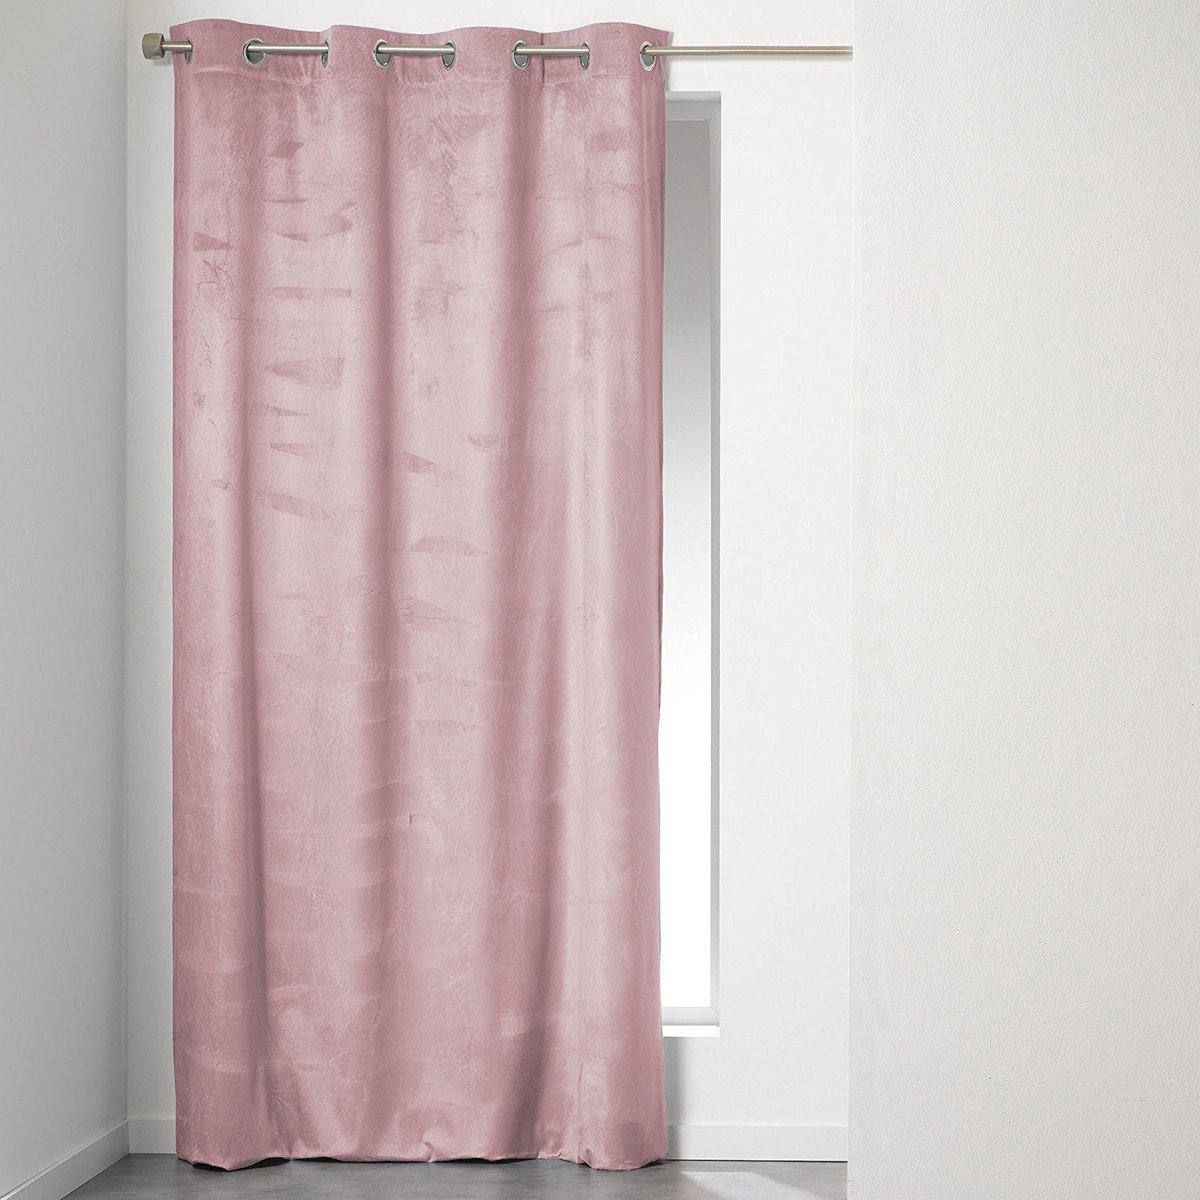 Sleepp - Velvet gordijn - Velours gordijn met ringen - 140 x 240 cm - roze  | bol.com